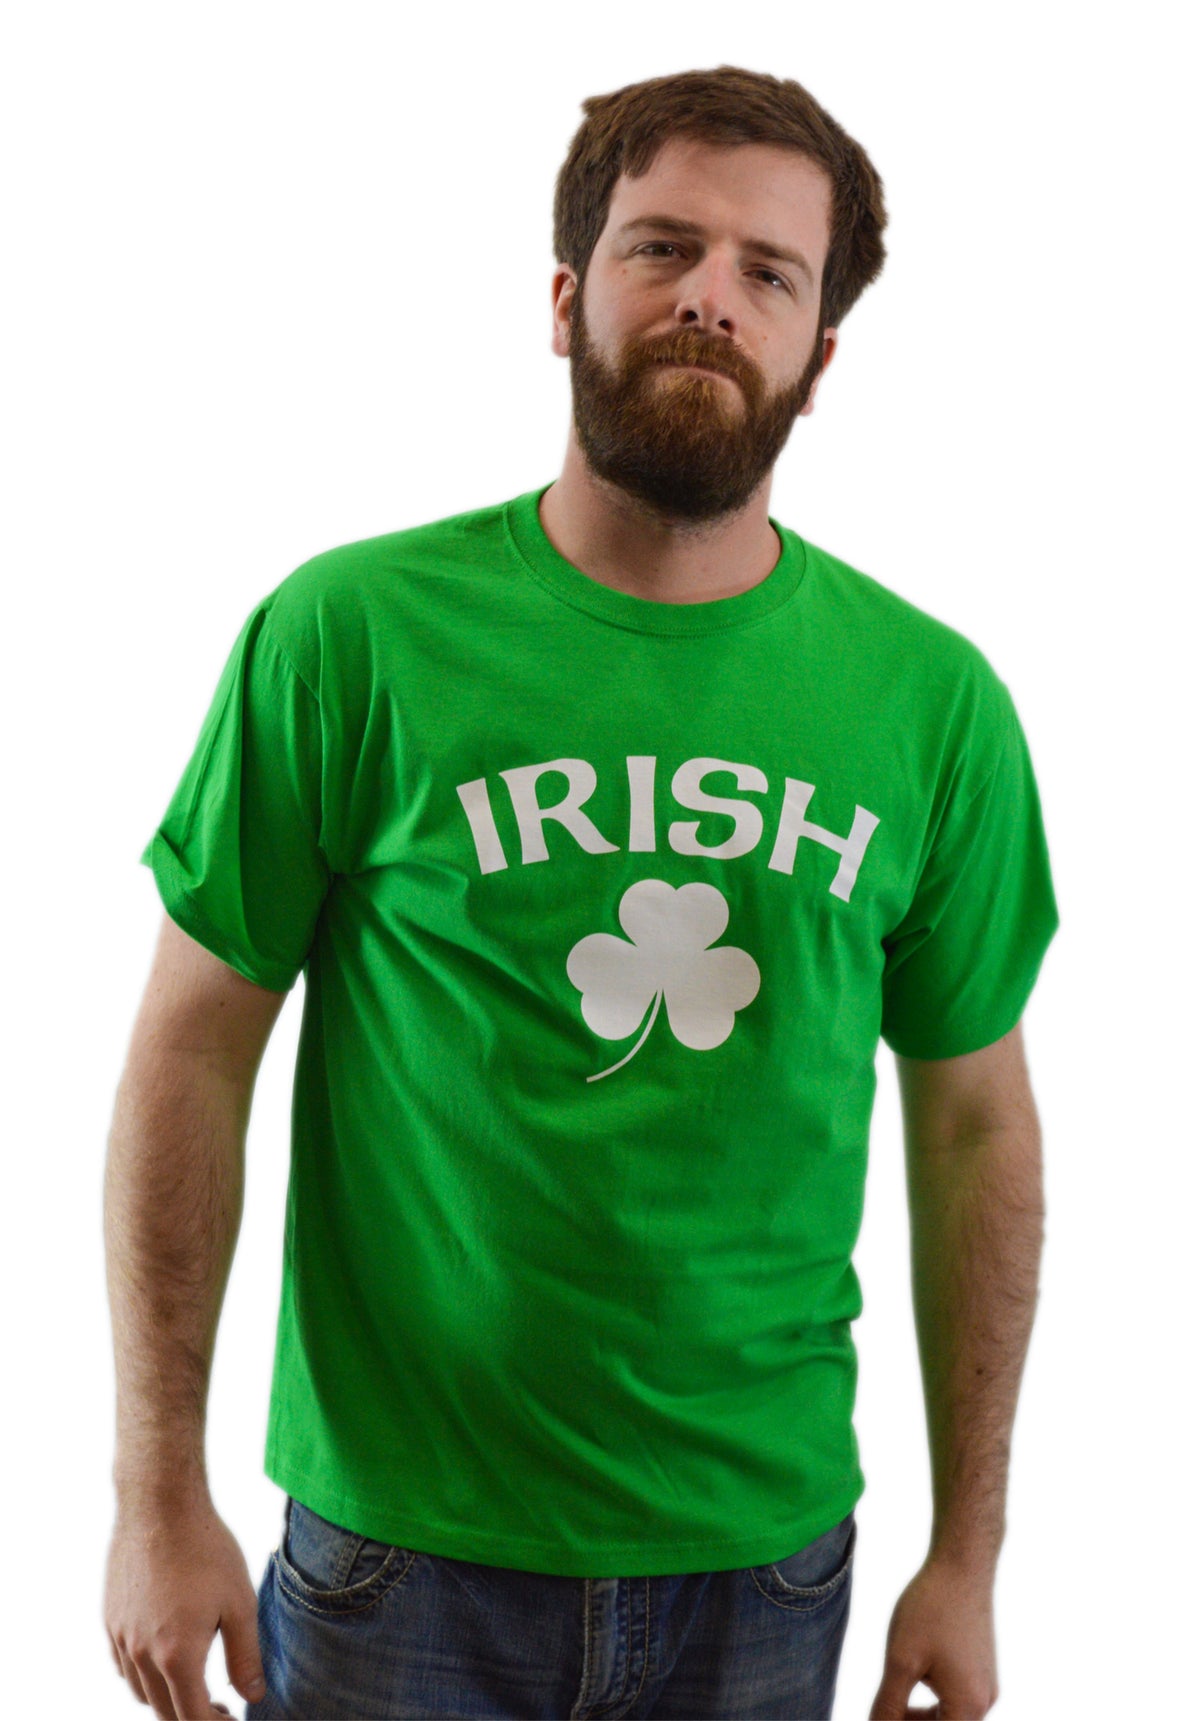 IRISH PRIDE Unisex Ireland T-shirt / St. Patrick's Day Irish Pride Tee